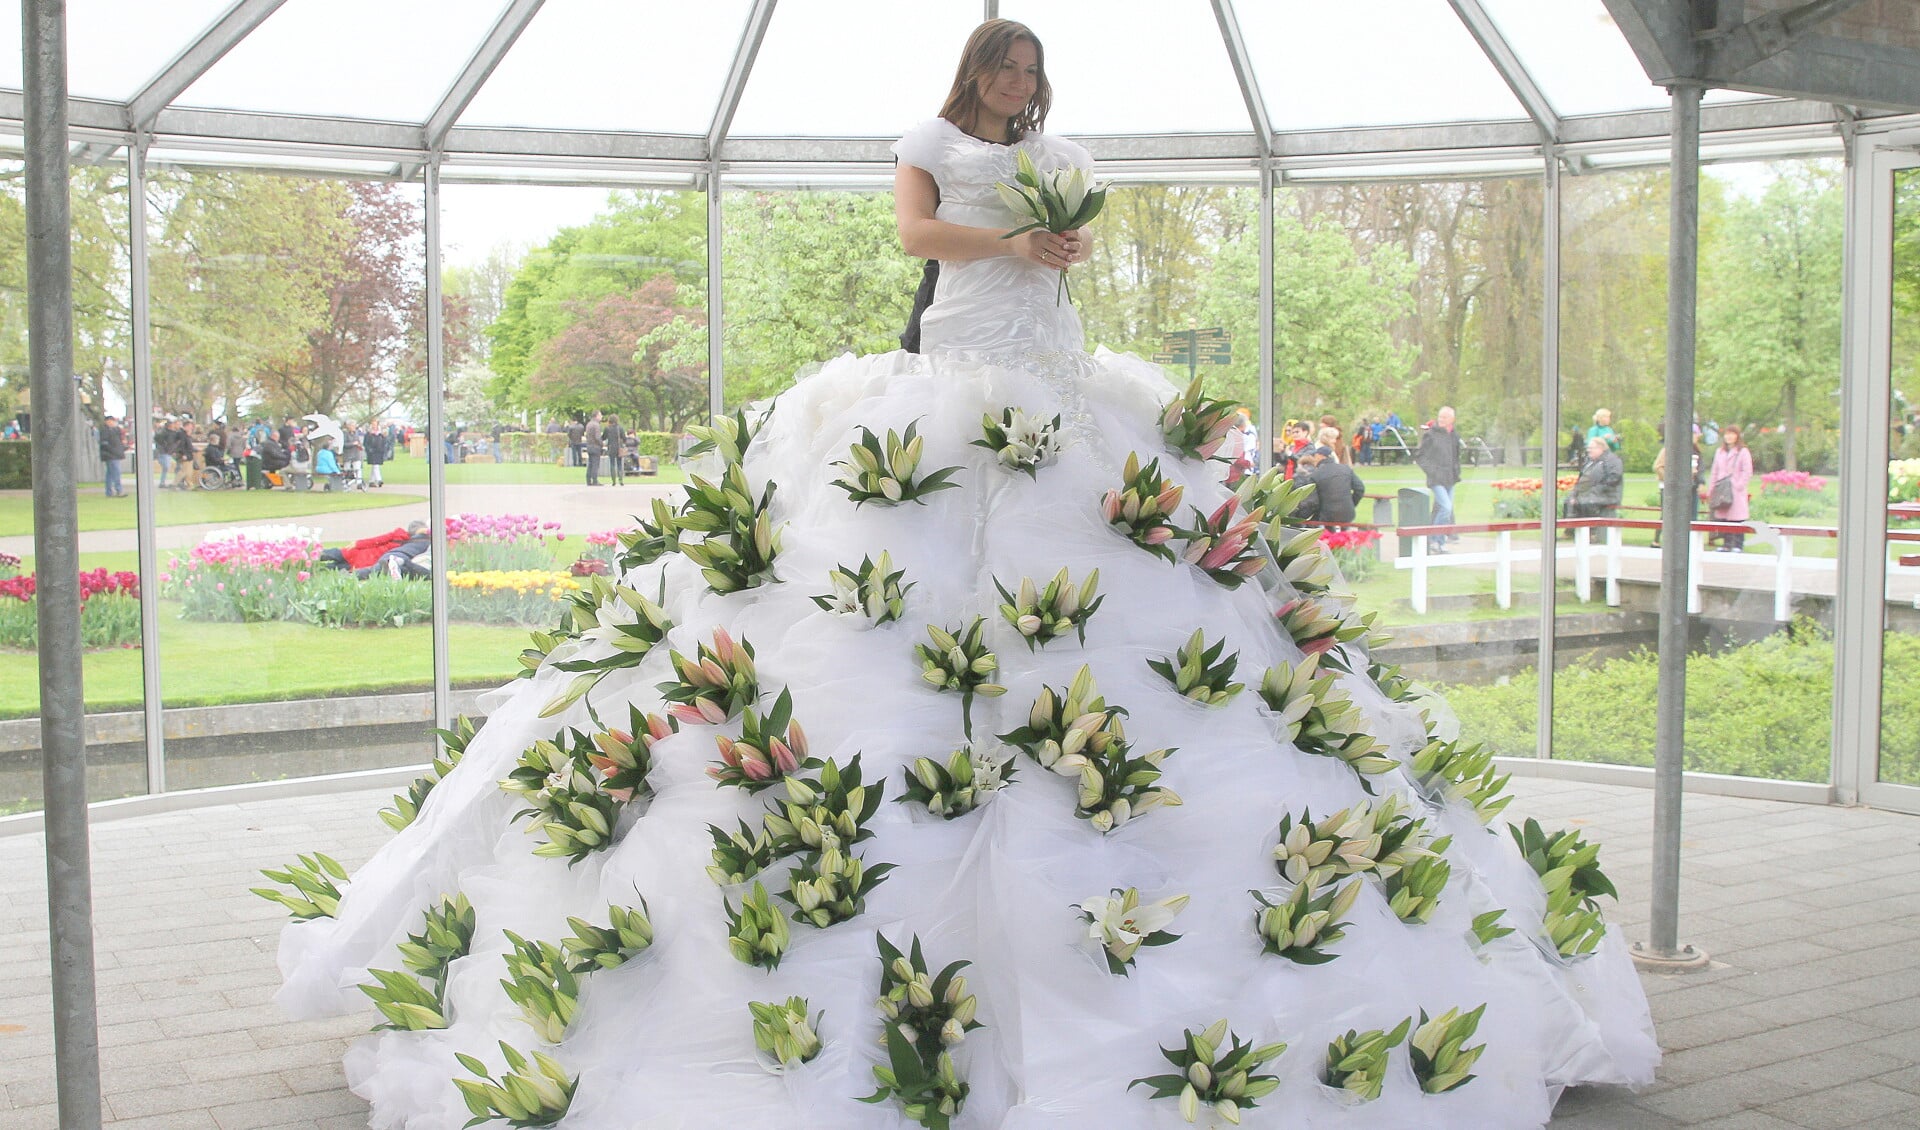 De achterkant van de jurk is open zodat iedereen zich kan laten vereeuwigen in deze trouwjurk. | Foto: Arie in 't Veld